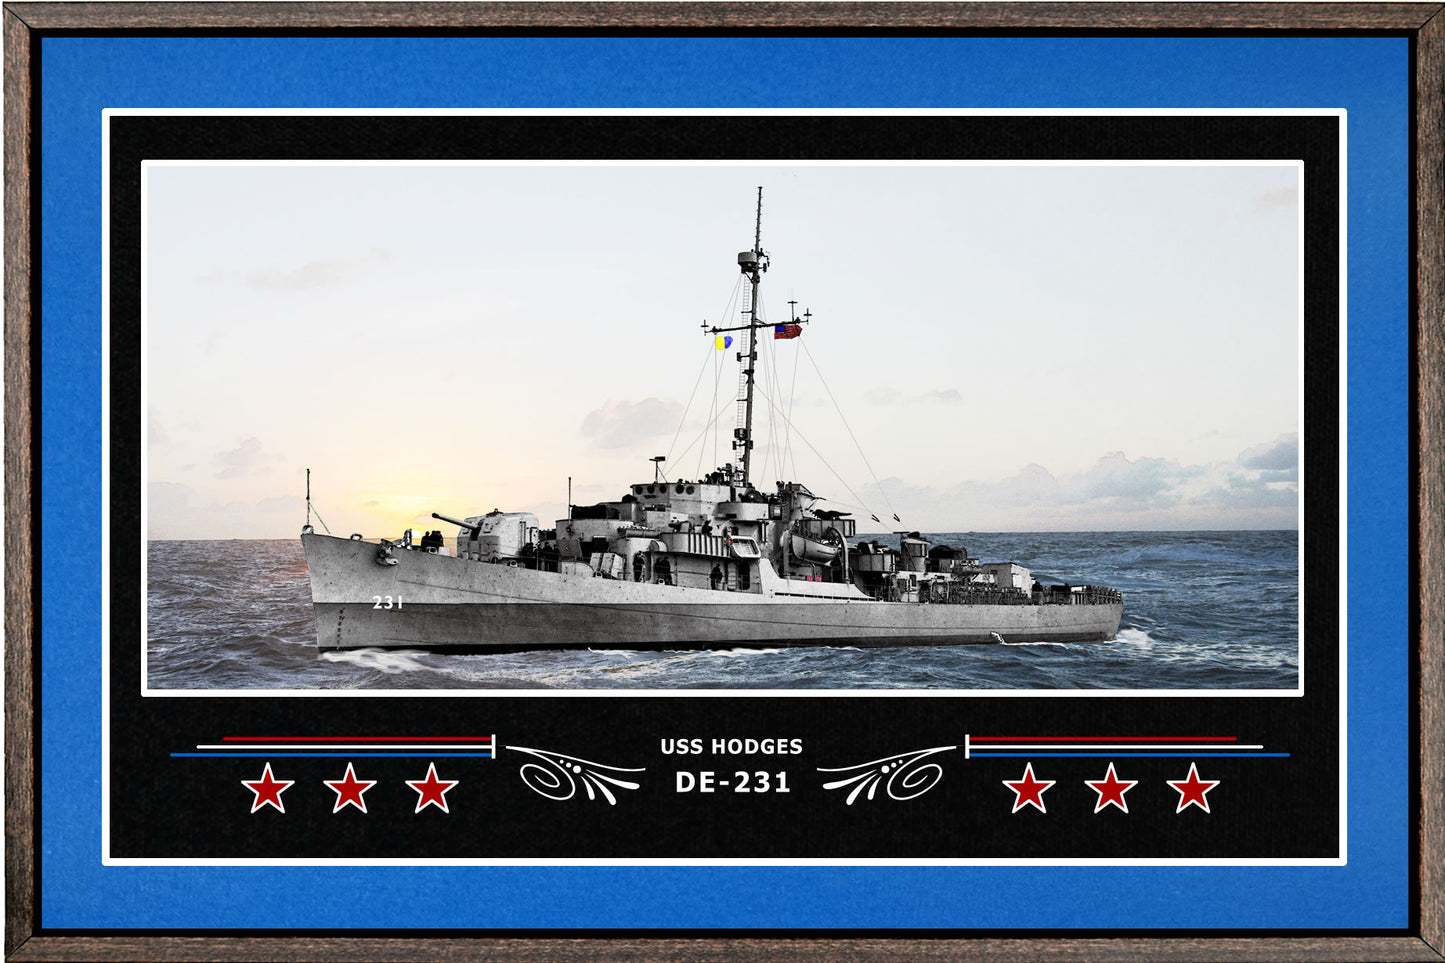 USS HODGES DE 231 BOX FRAMED CANVAS ART BLUE